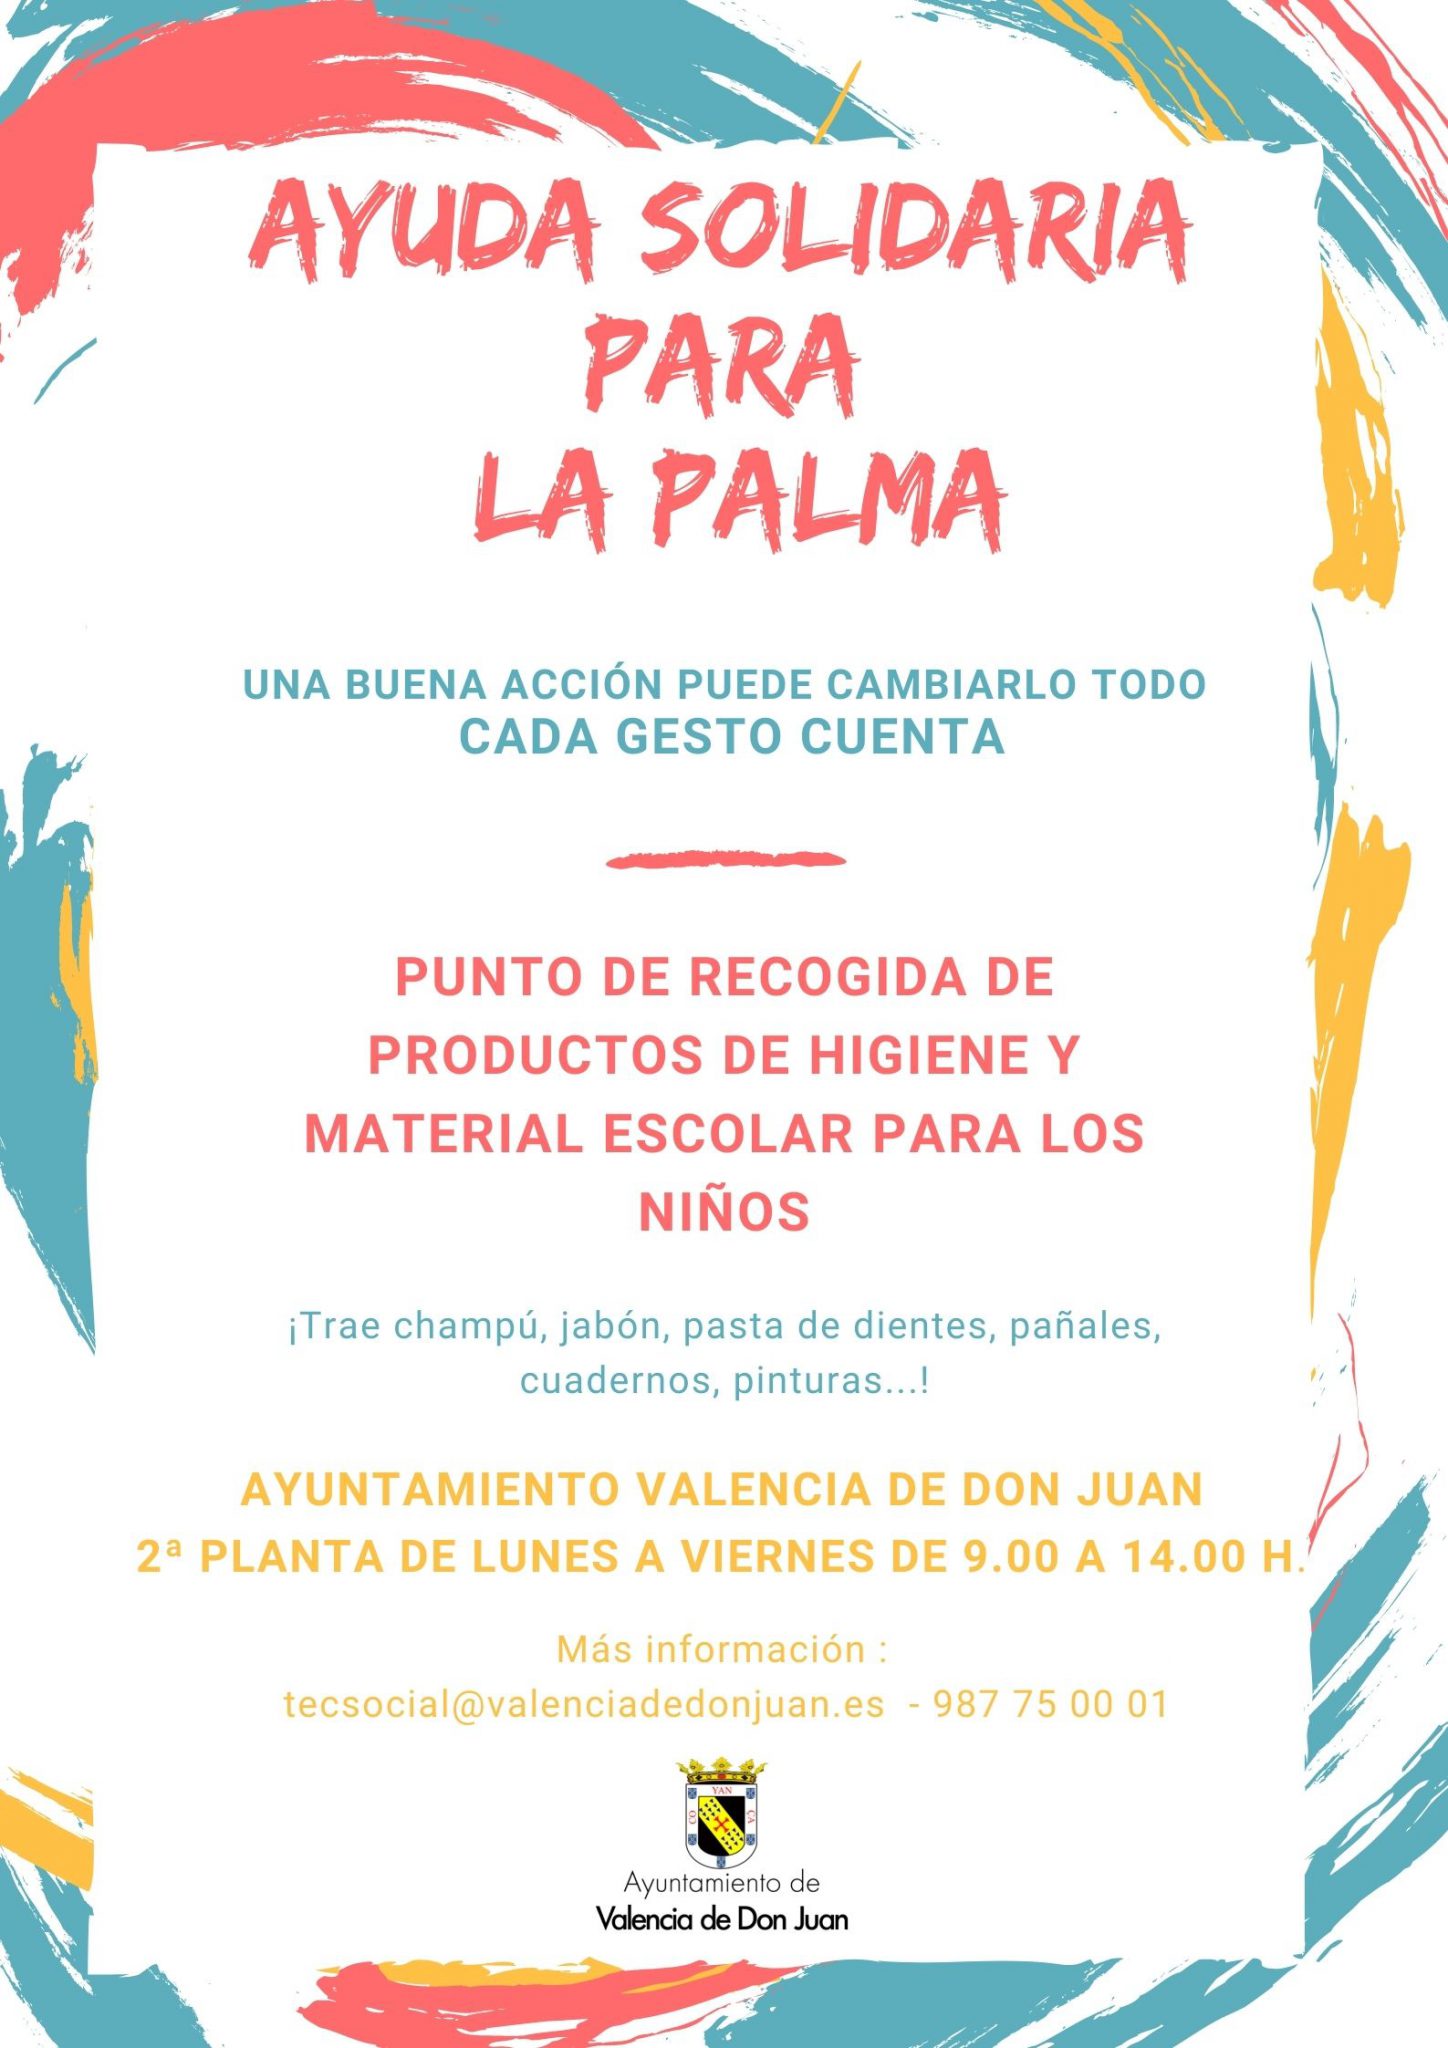 Ayuda Solidaria para La Palma